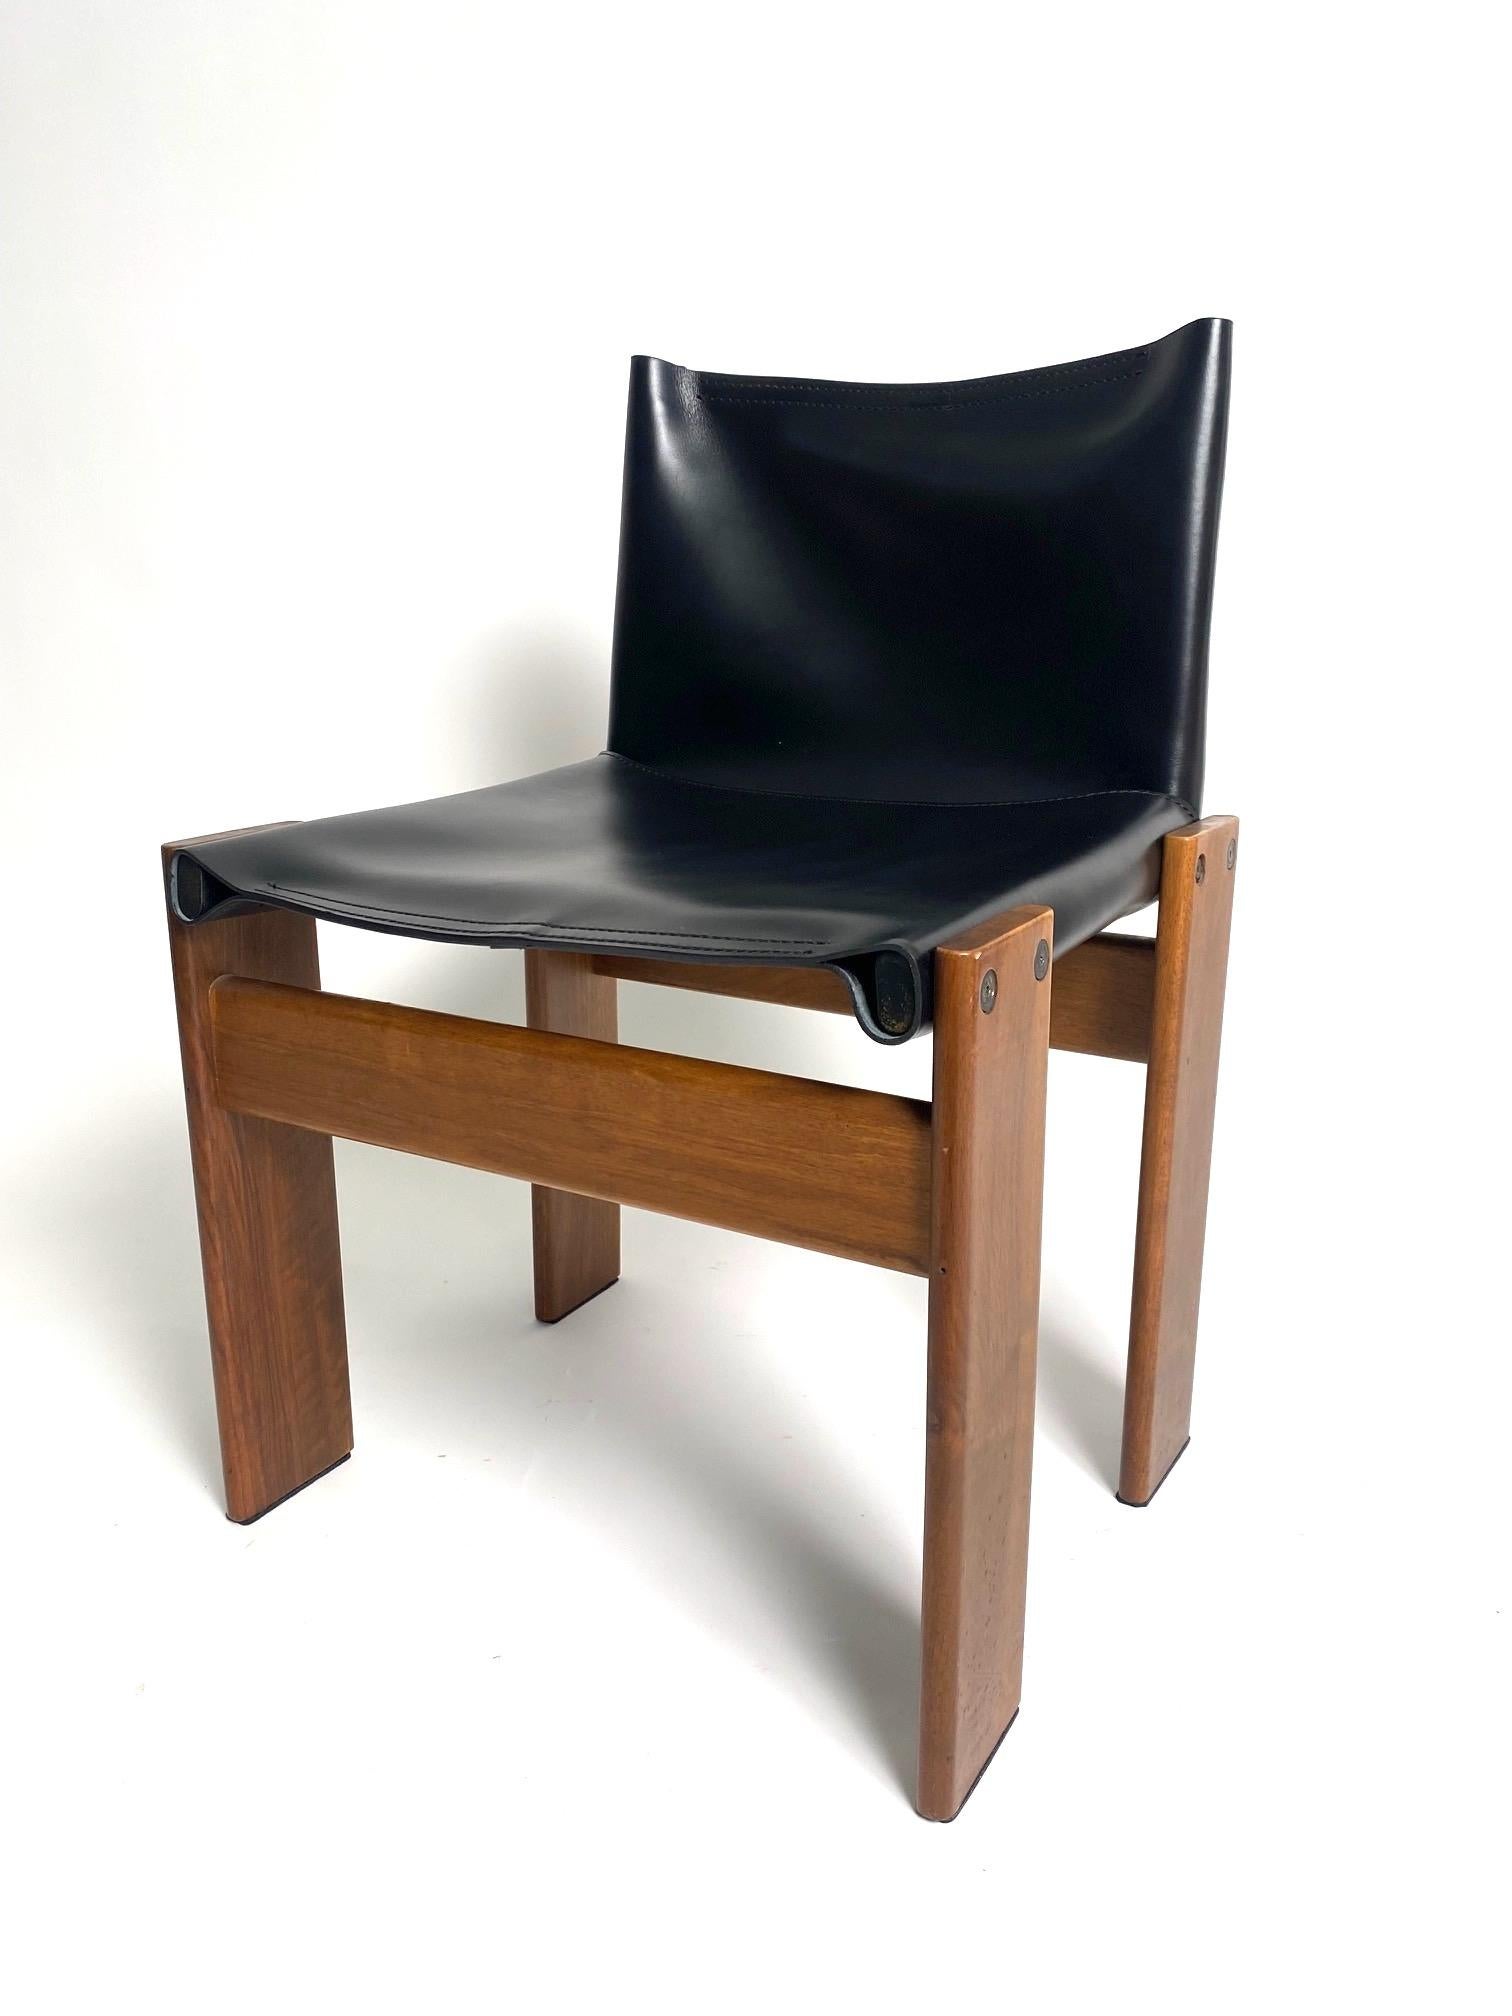 Satz von 8 Stühlen aus Leder und Holz Modell Monk, Afra & Tobia Scarpa für Molteni, Italien

Es ist eines der kultigsten und raffiniertesten Modelle des berühmten italienischen Architekten- und Designerpaares Afra & Tobia Scarpa. Bequeme, elegante